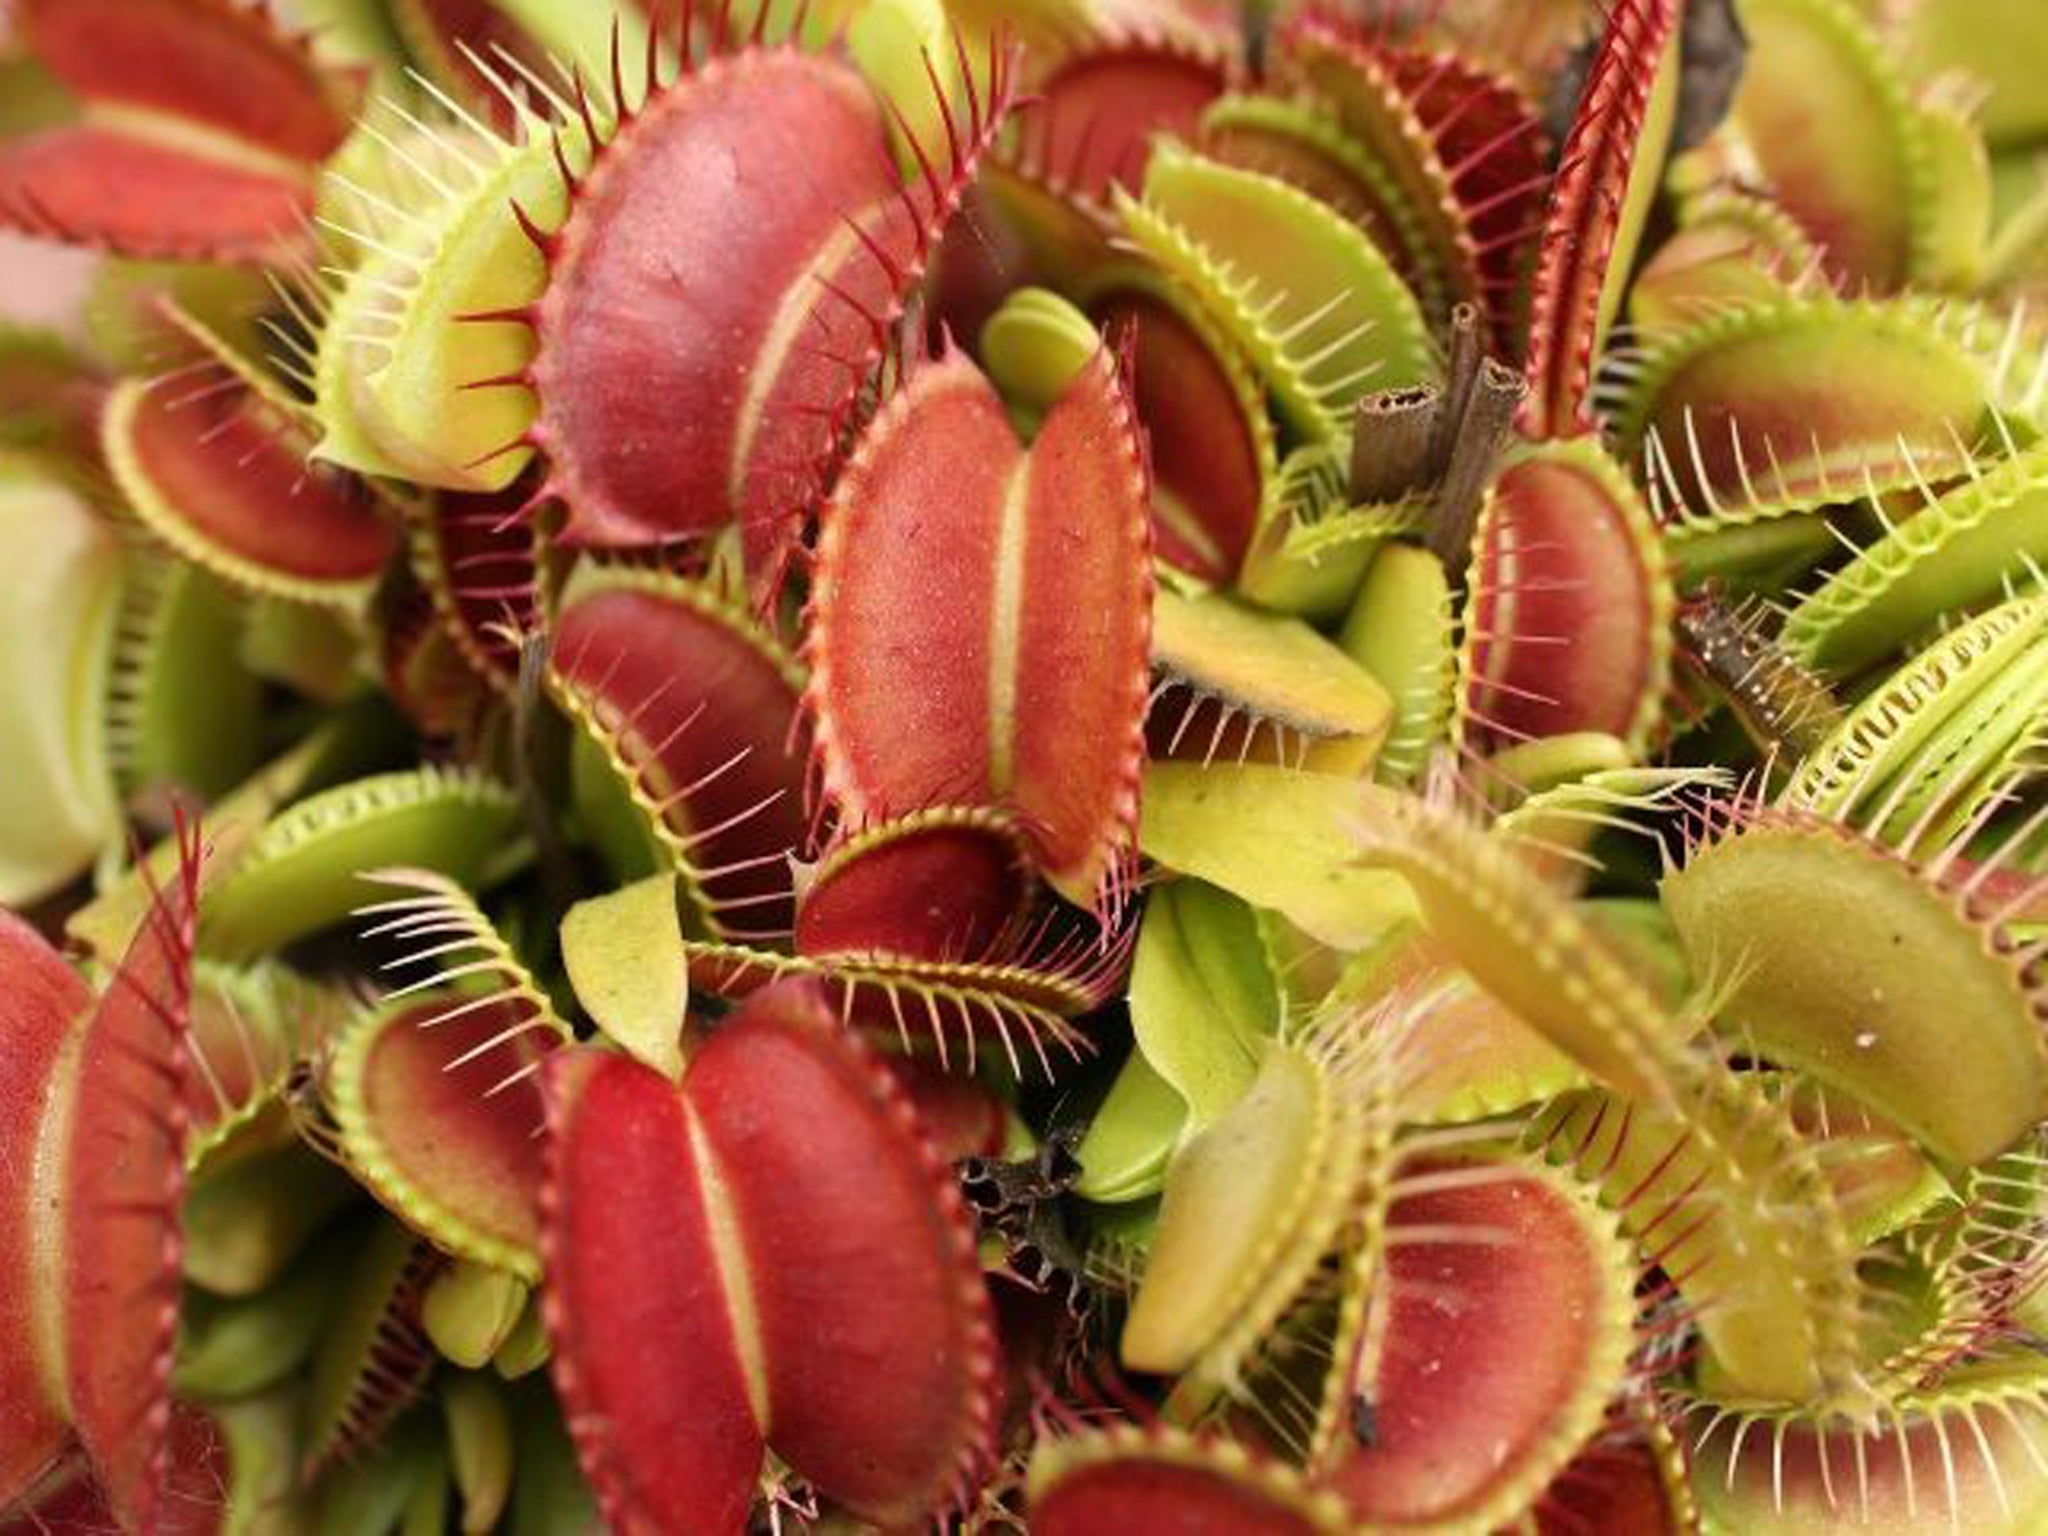 Hundreds of Venus flytraps were stolen